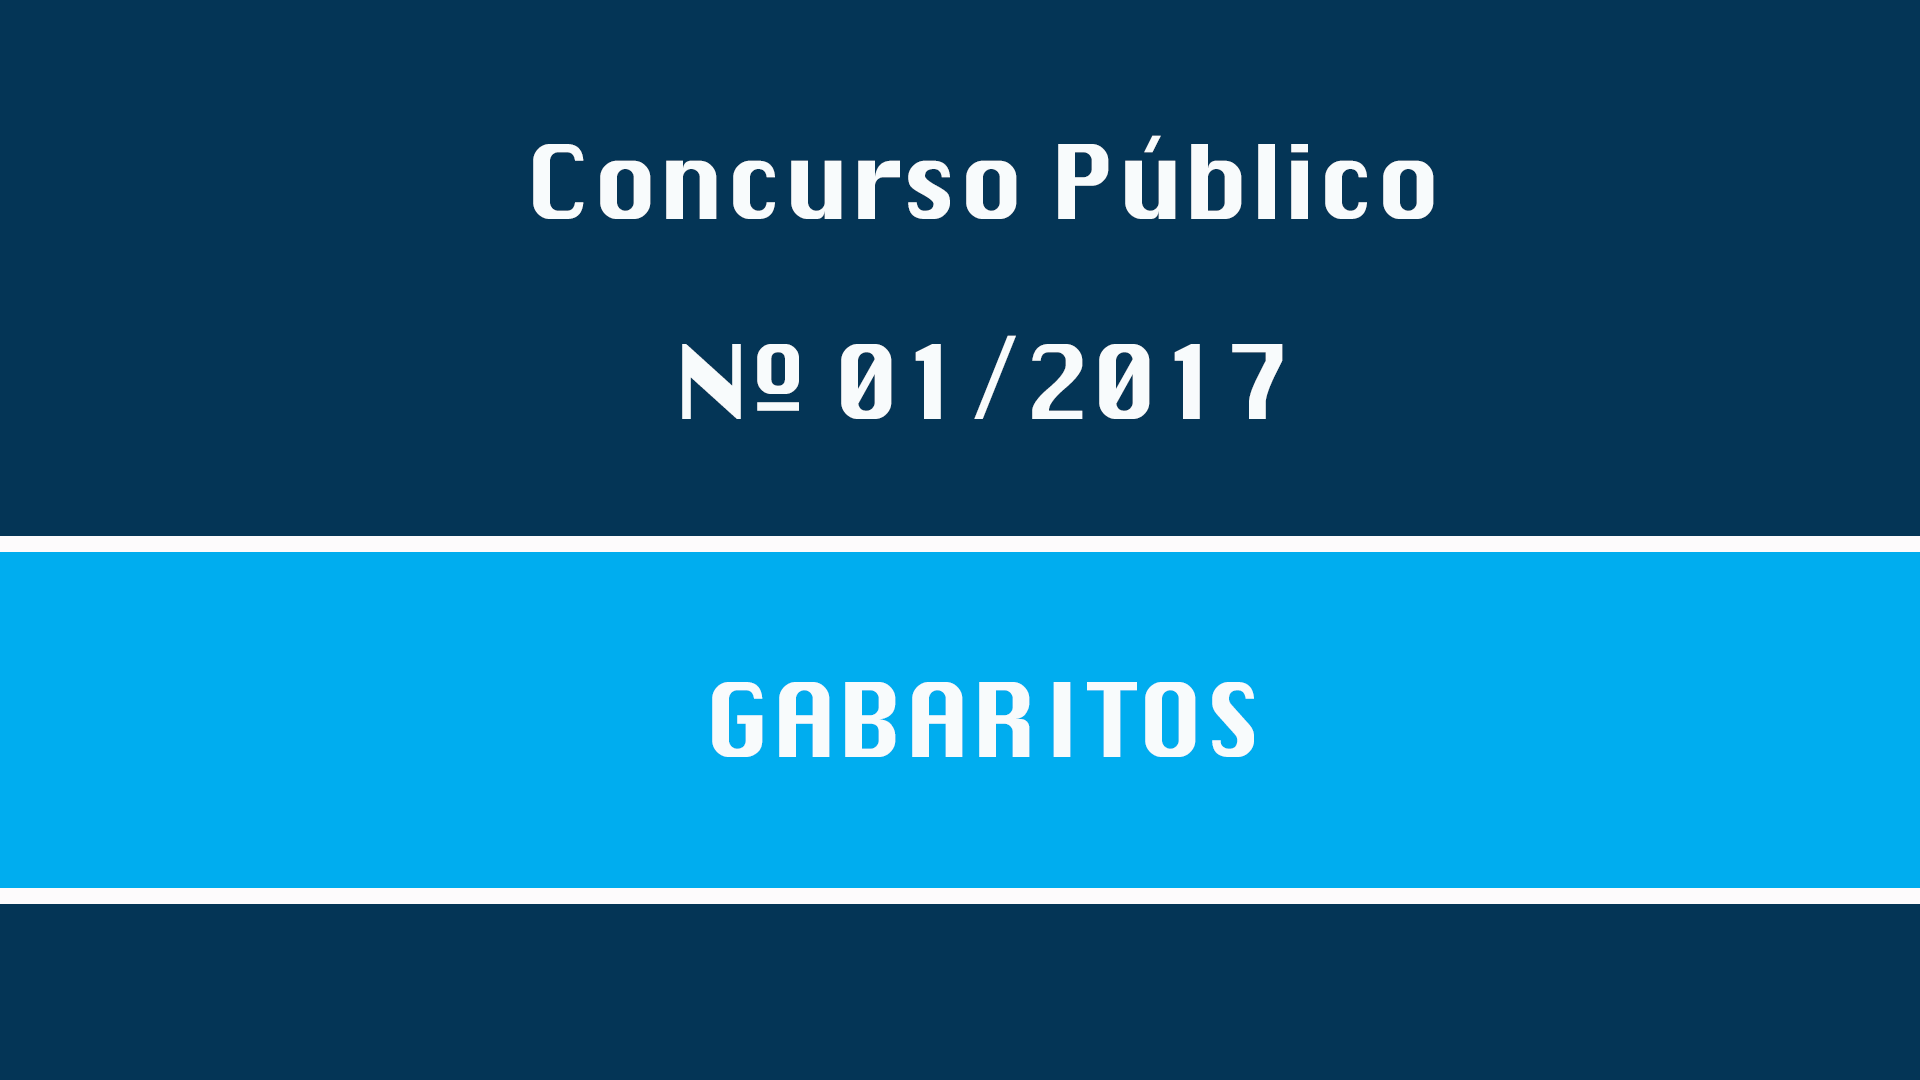 CONCURSO PÚBLICO Nº 001/2017 - GABARITOS